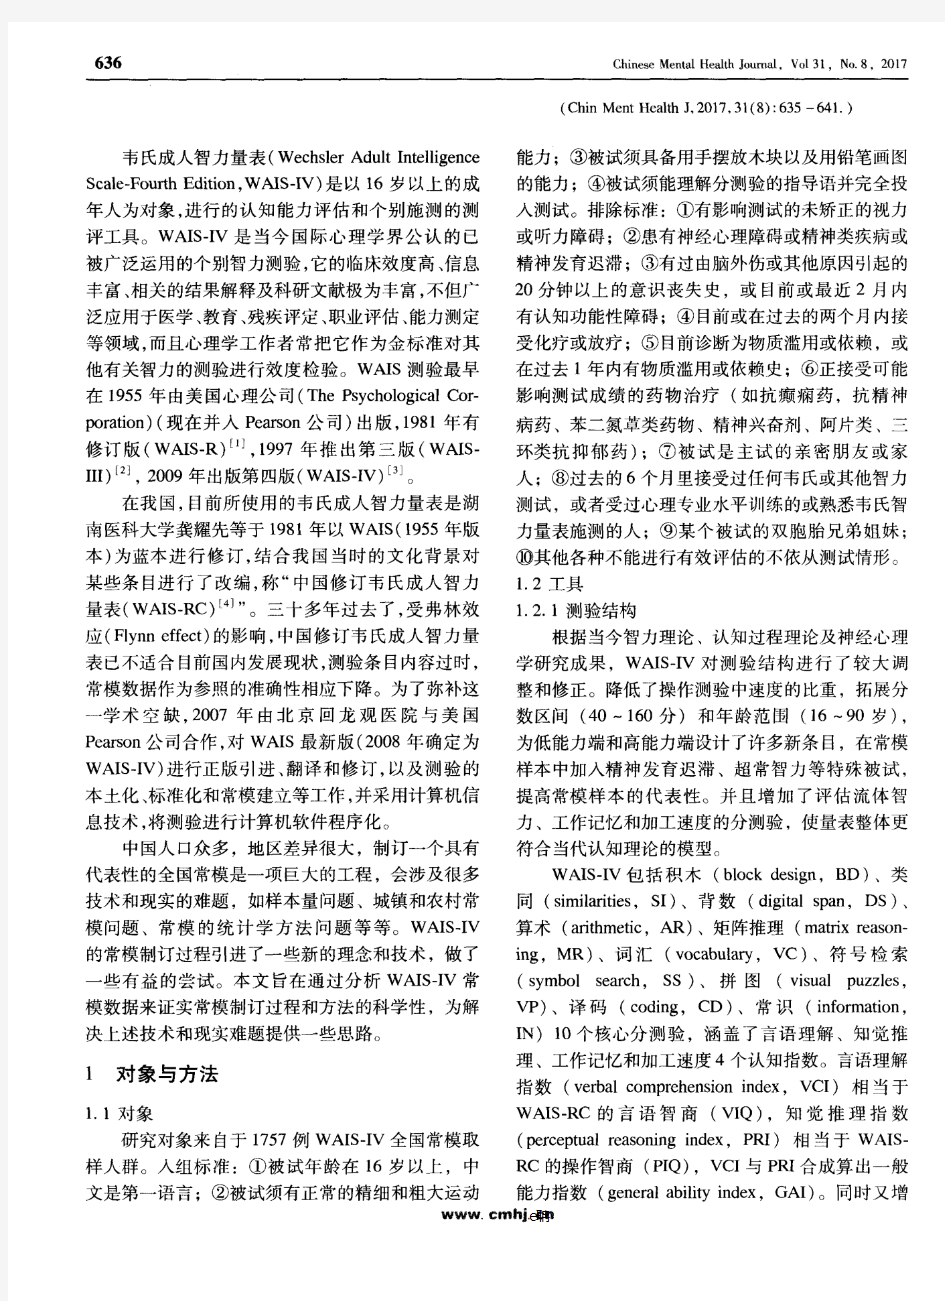 中文版韦氏成人智力量表第四版的常模制订